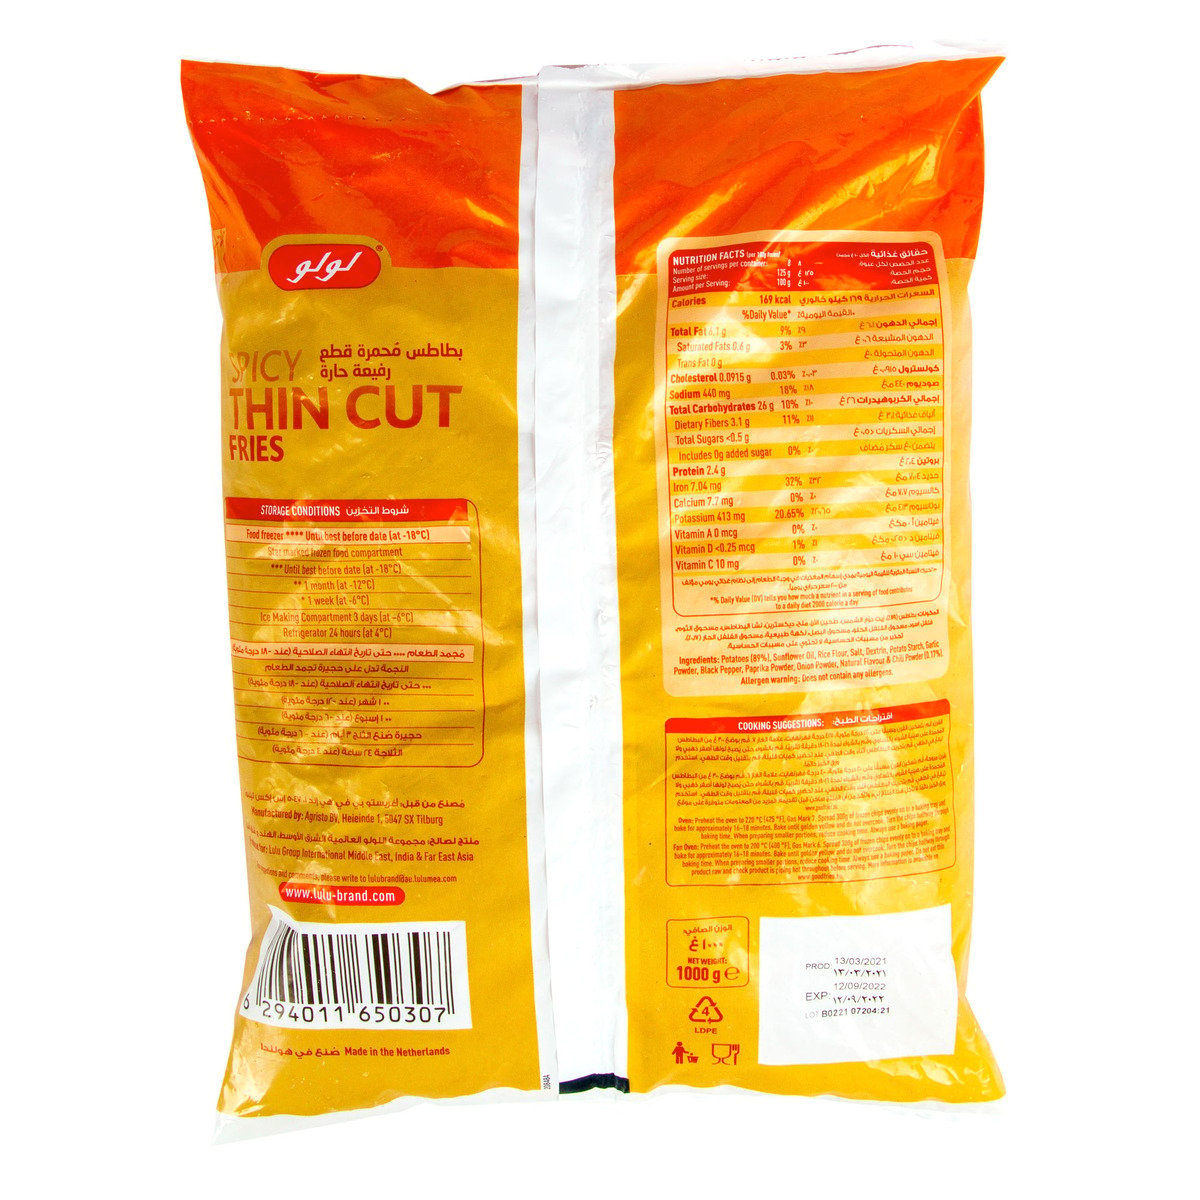 LuLu Spicy Thin Cut Fries 1kg